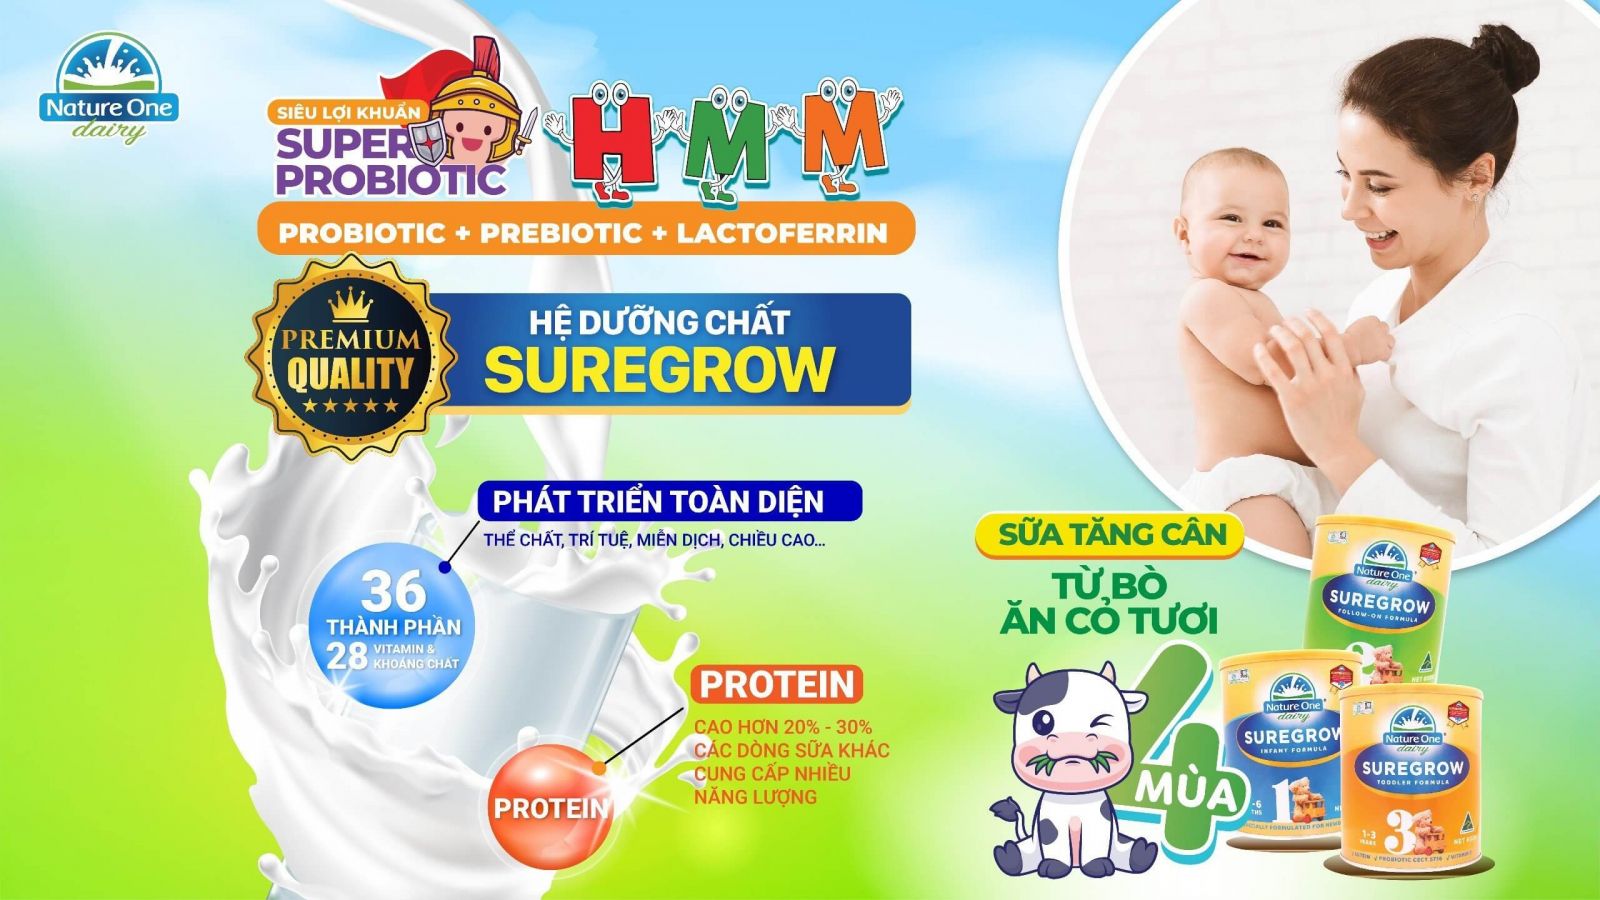 Suregrow – Dòng sản phẩm sở hữu hàng loạt ưu điểm vượt trội, hỗ trợ tăng cân cho bé